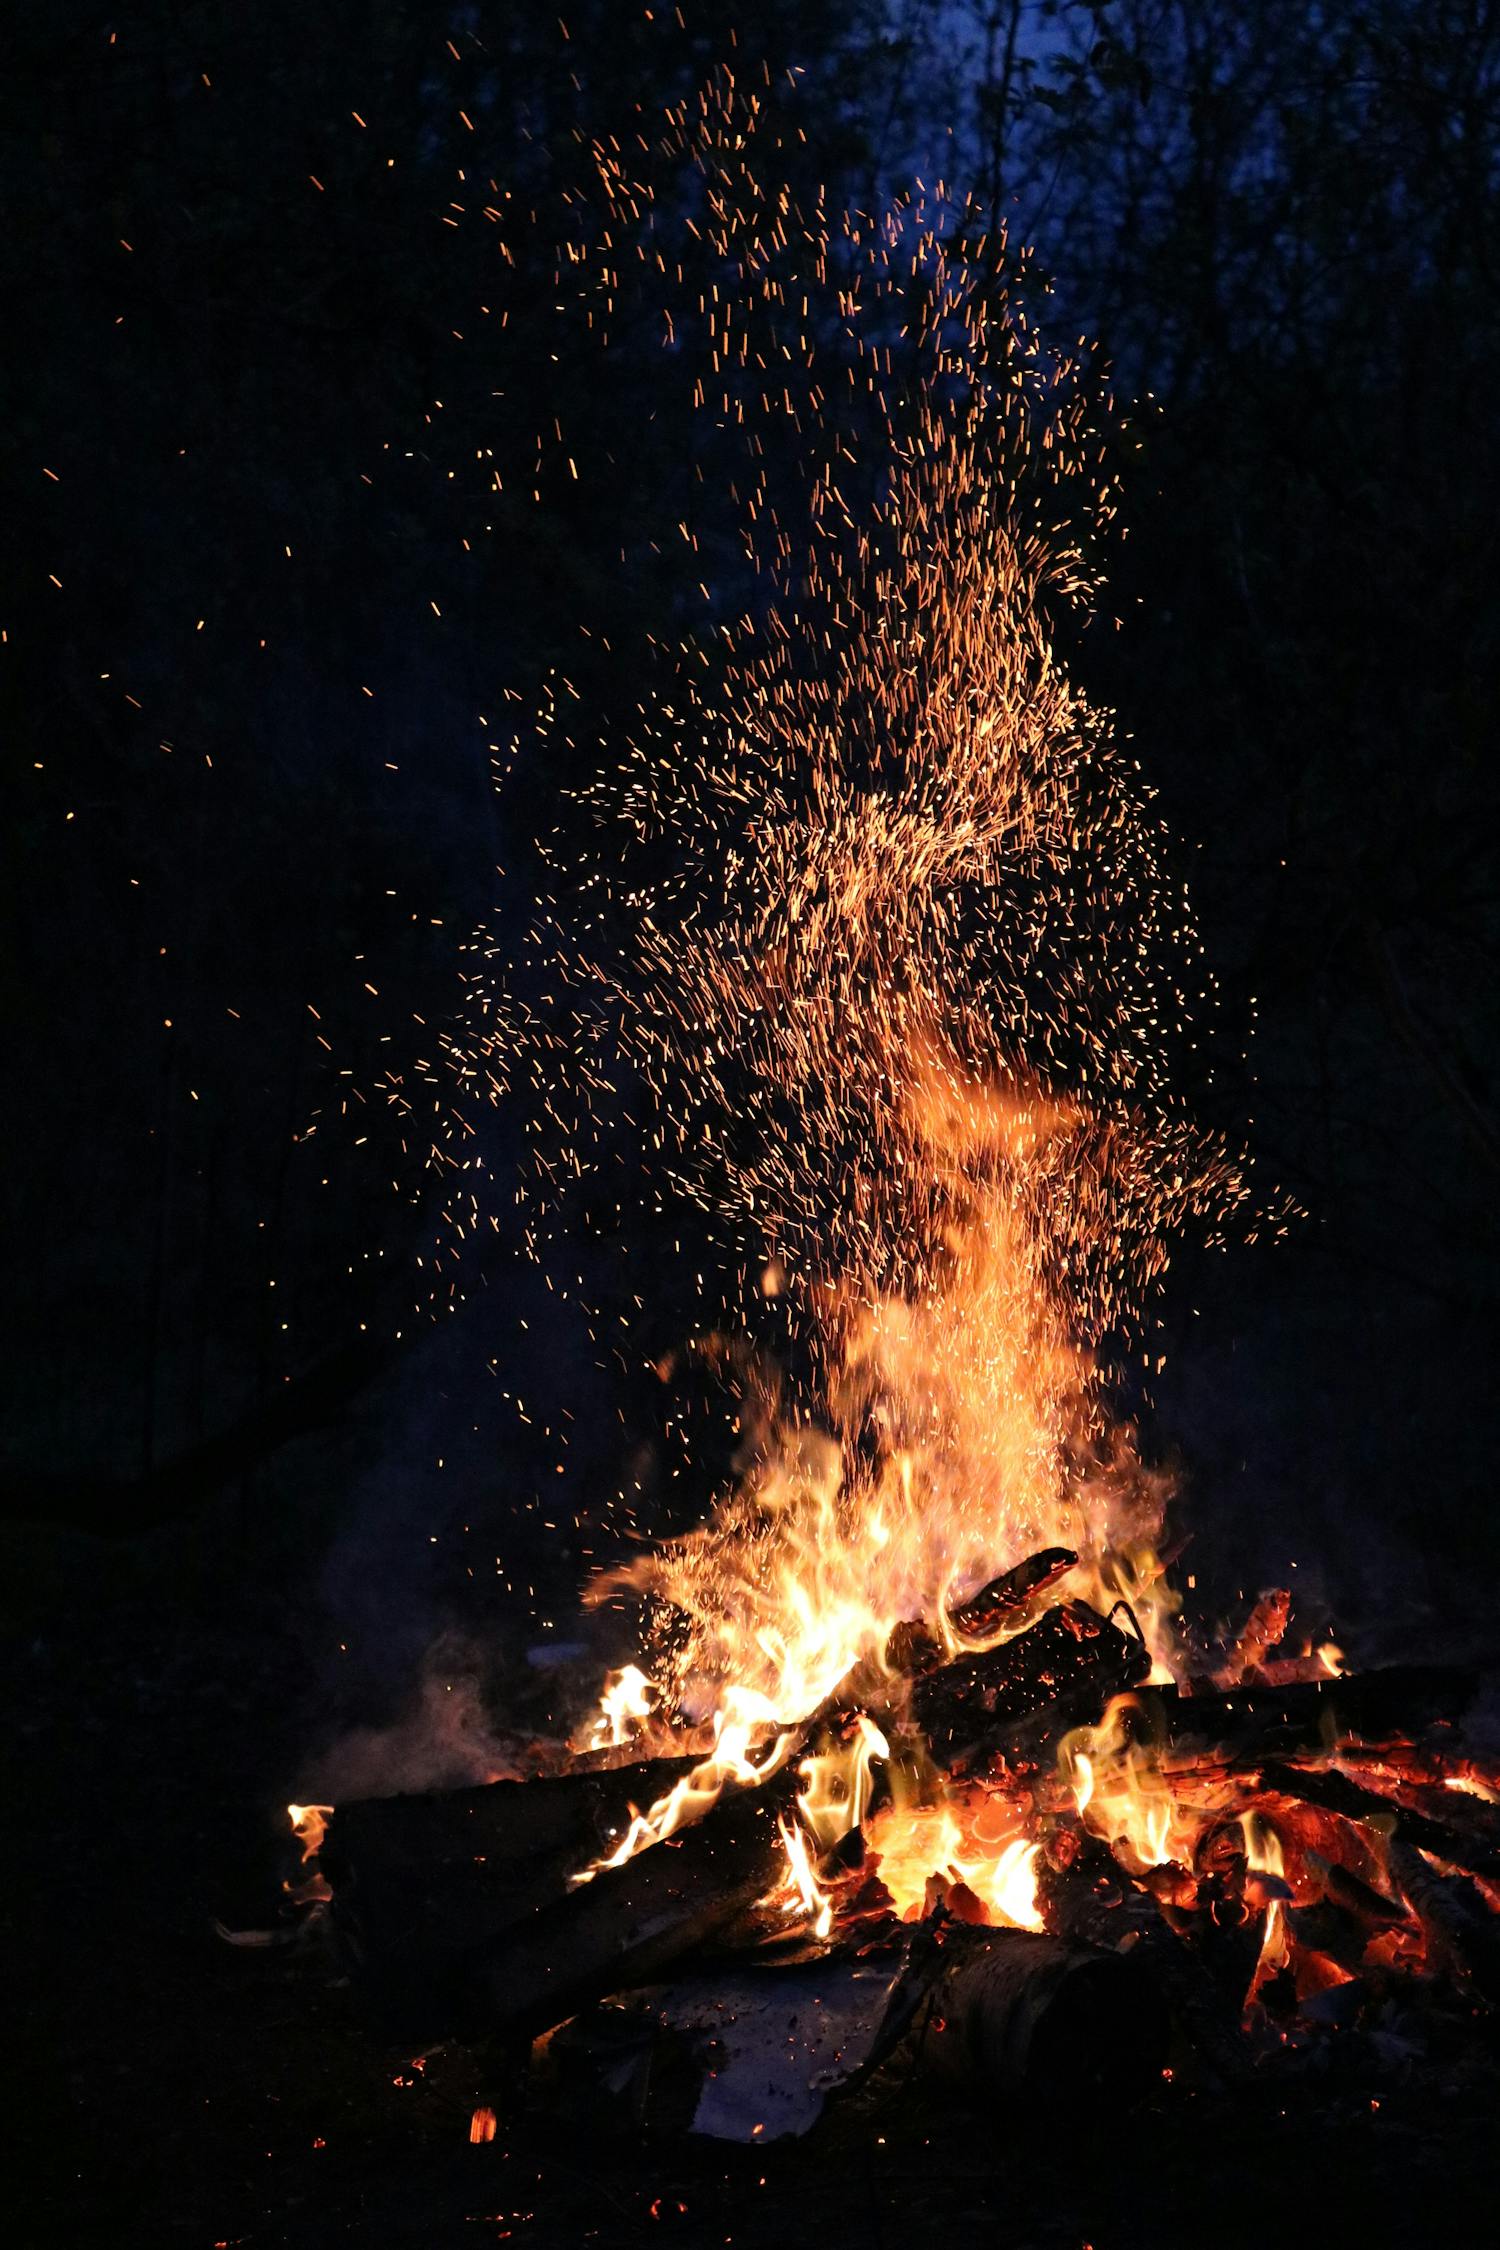 Burning Firewoods